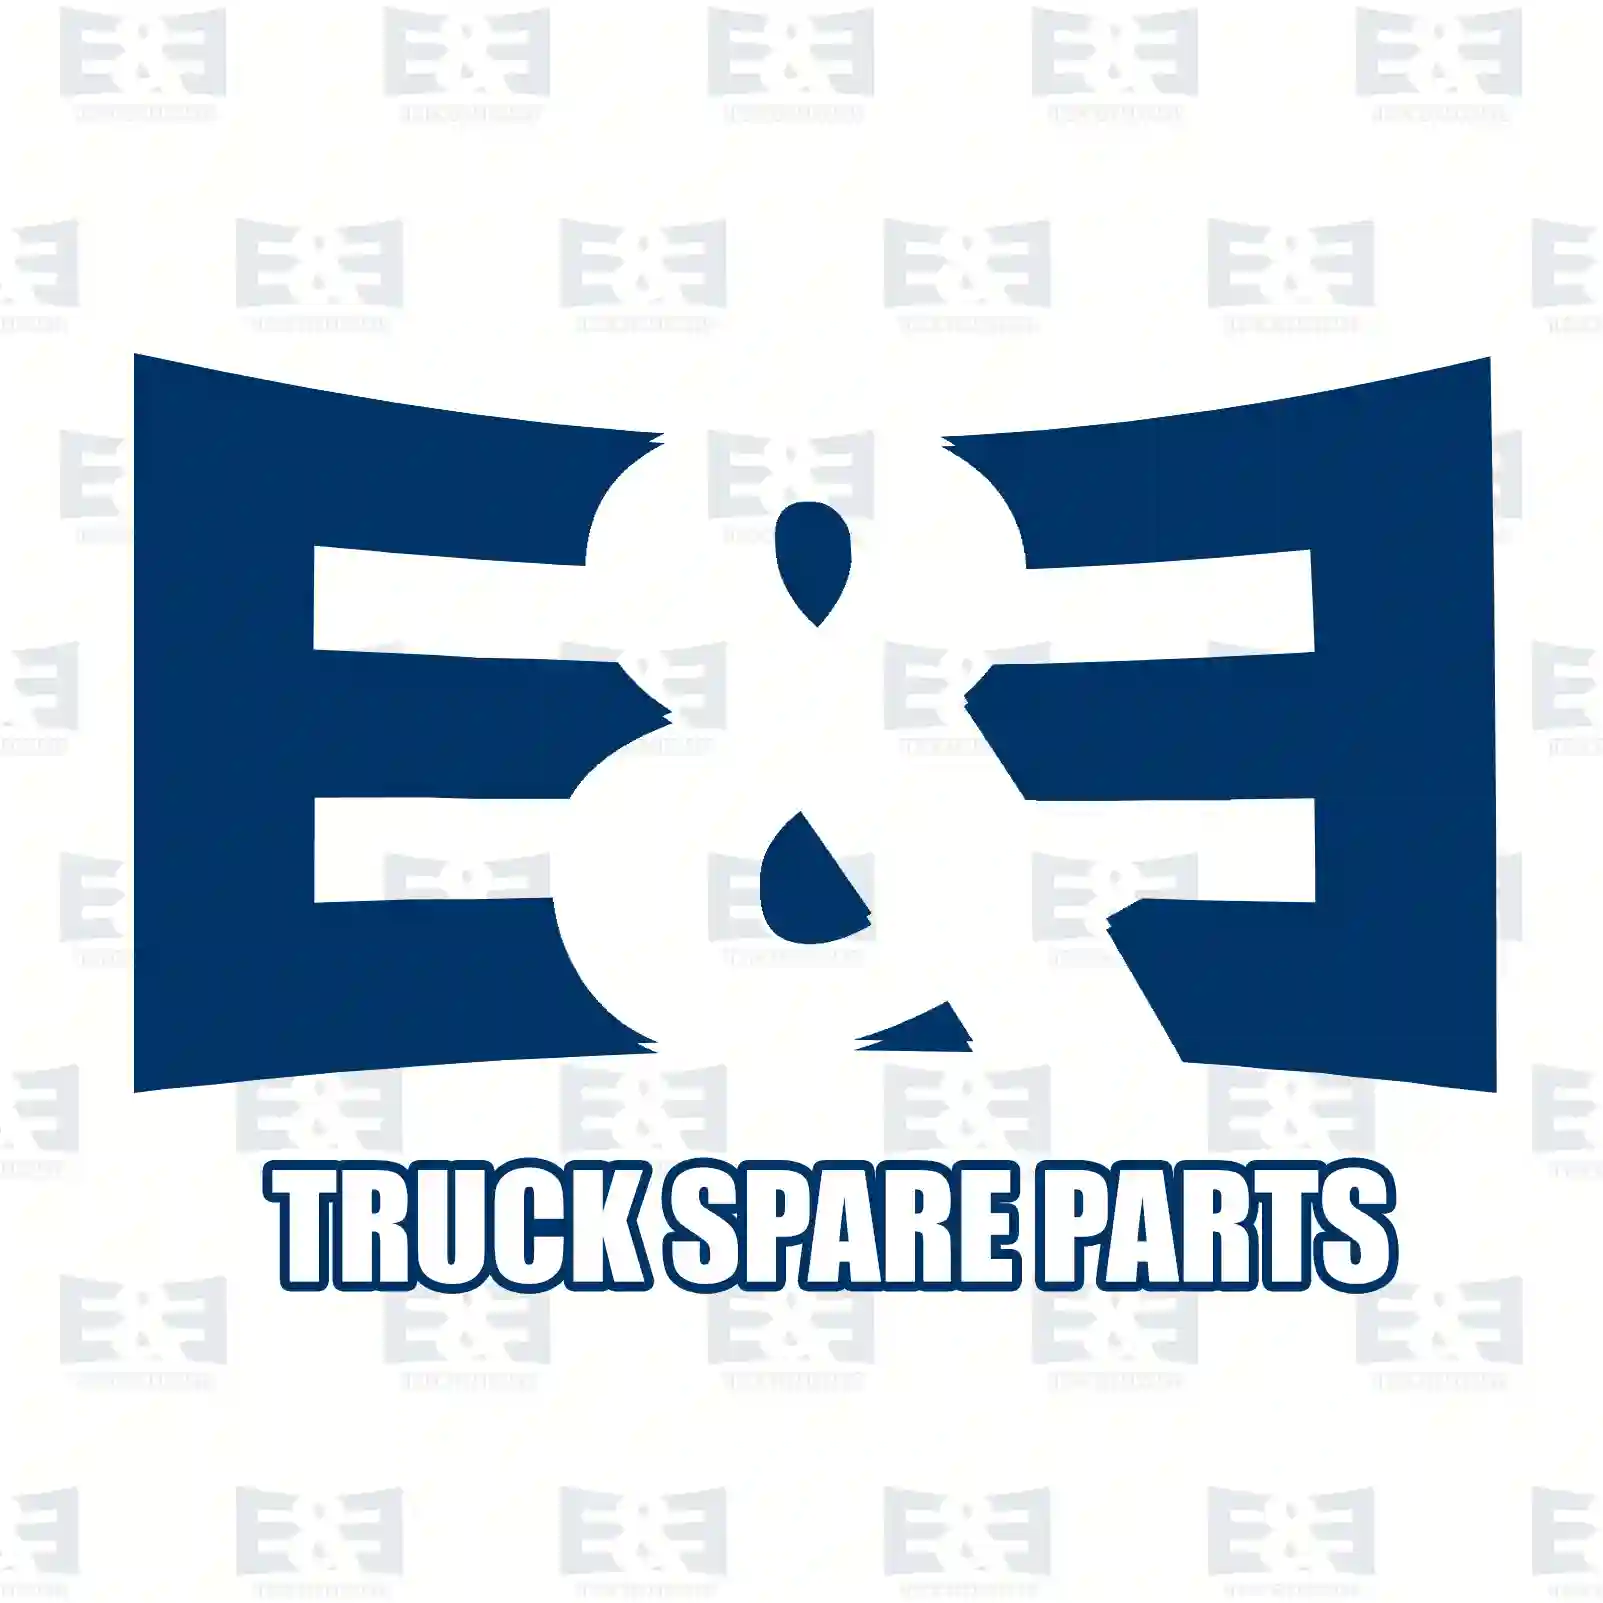 Propeller shaft, 2E2276048, 1749842, 3C11-4K357-FC, 4743299, AC11-4K357-DB ||  2E2276048 E&E Truck Spare Parts | Truck Spare Parts, Auotomotive Spare Parts Propeller shaft, 2E2276048, 1749842, 3C11-4K357-FC, 4743299, AC11-4K357-DB ||  2E2276048 E&E Truck Spare Parts | Truck Spare Parts, Auotomotive Spare Parts